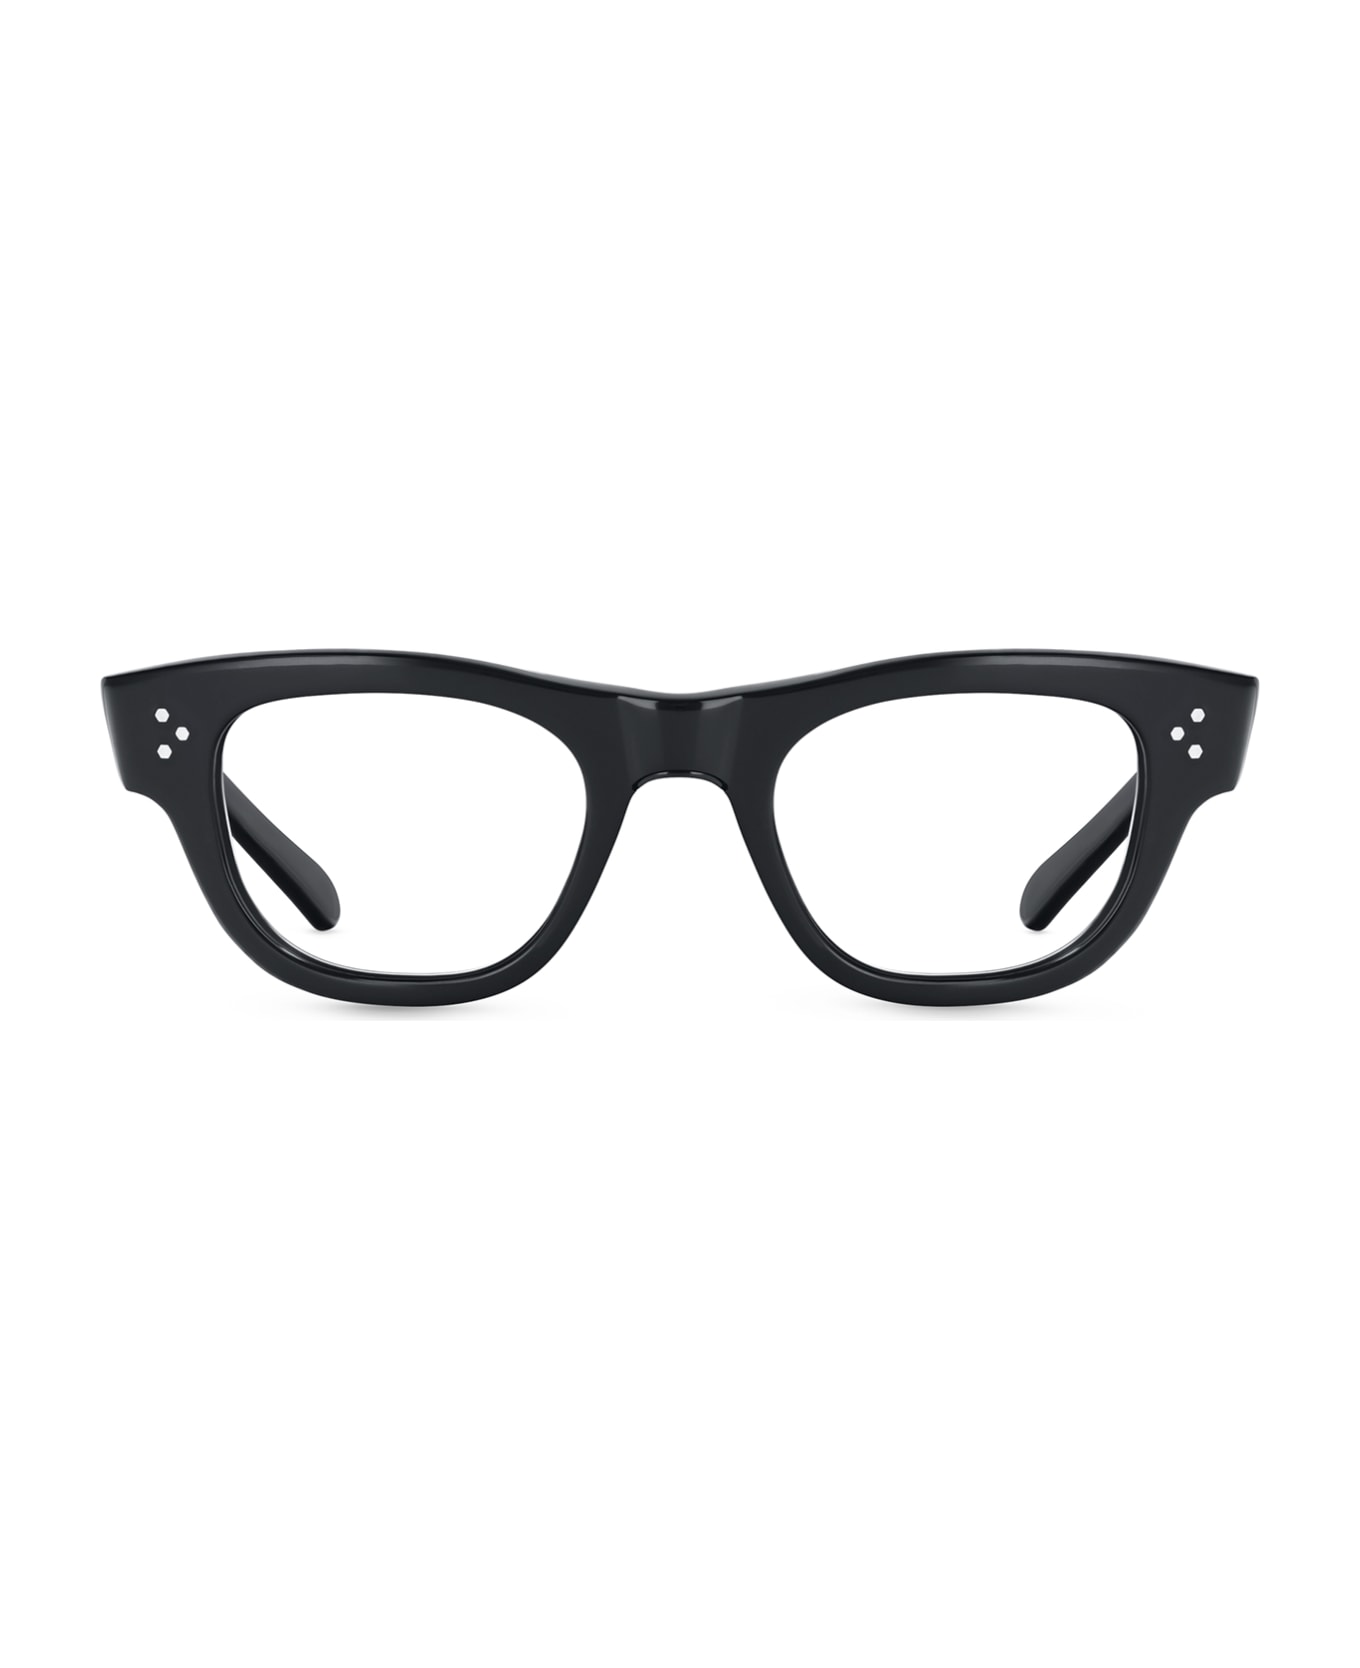 Mr. Leight Waimea C Black Glass-shiny Black Glasses - Black Glass-Shiny Black アイウェア